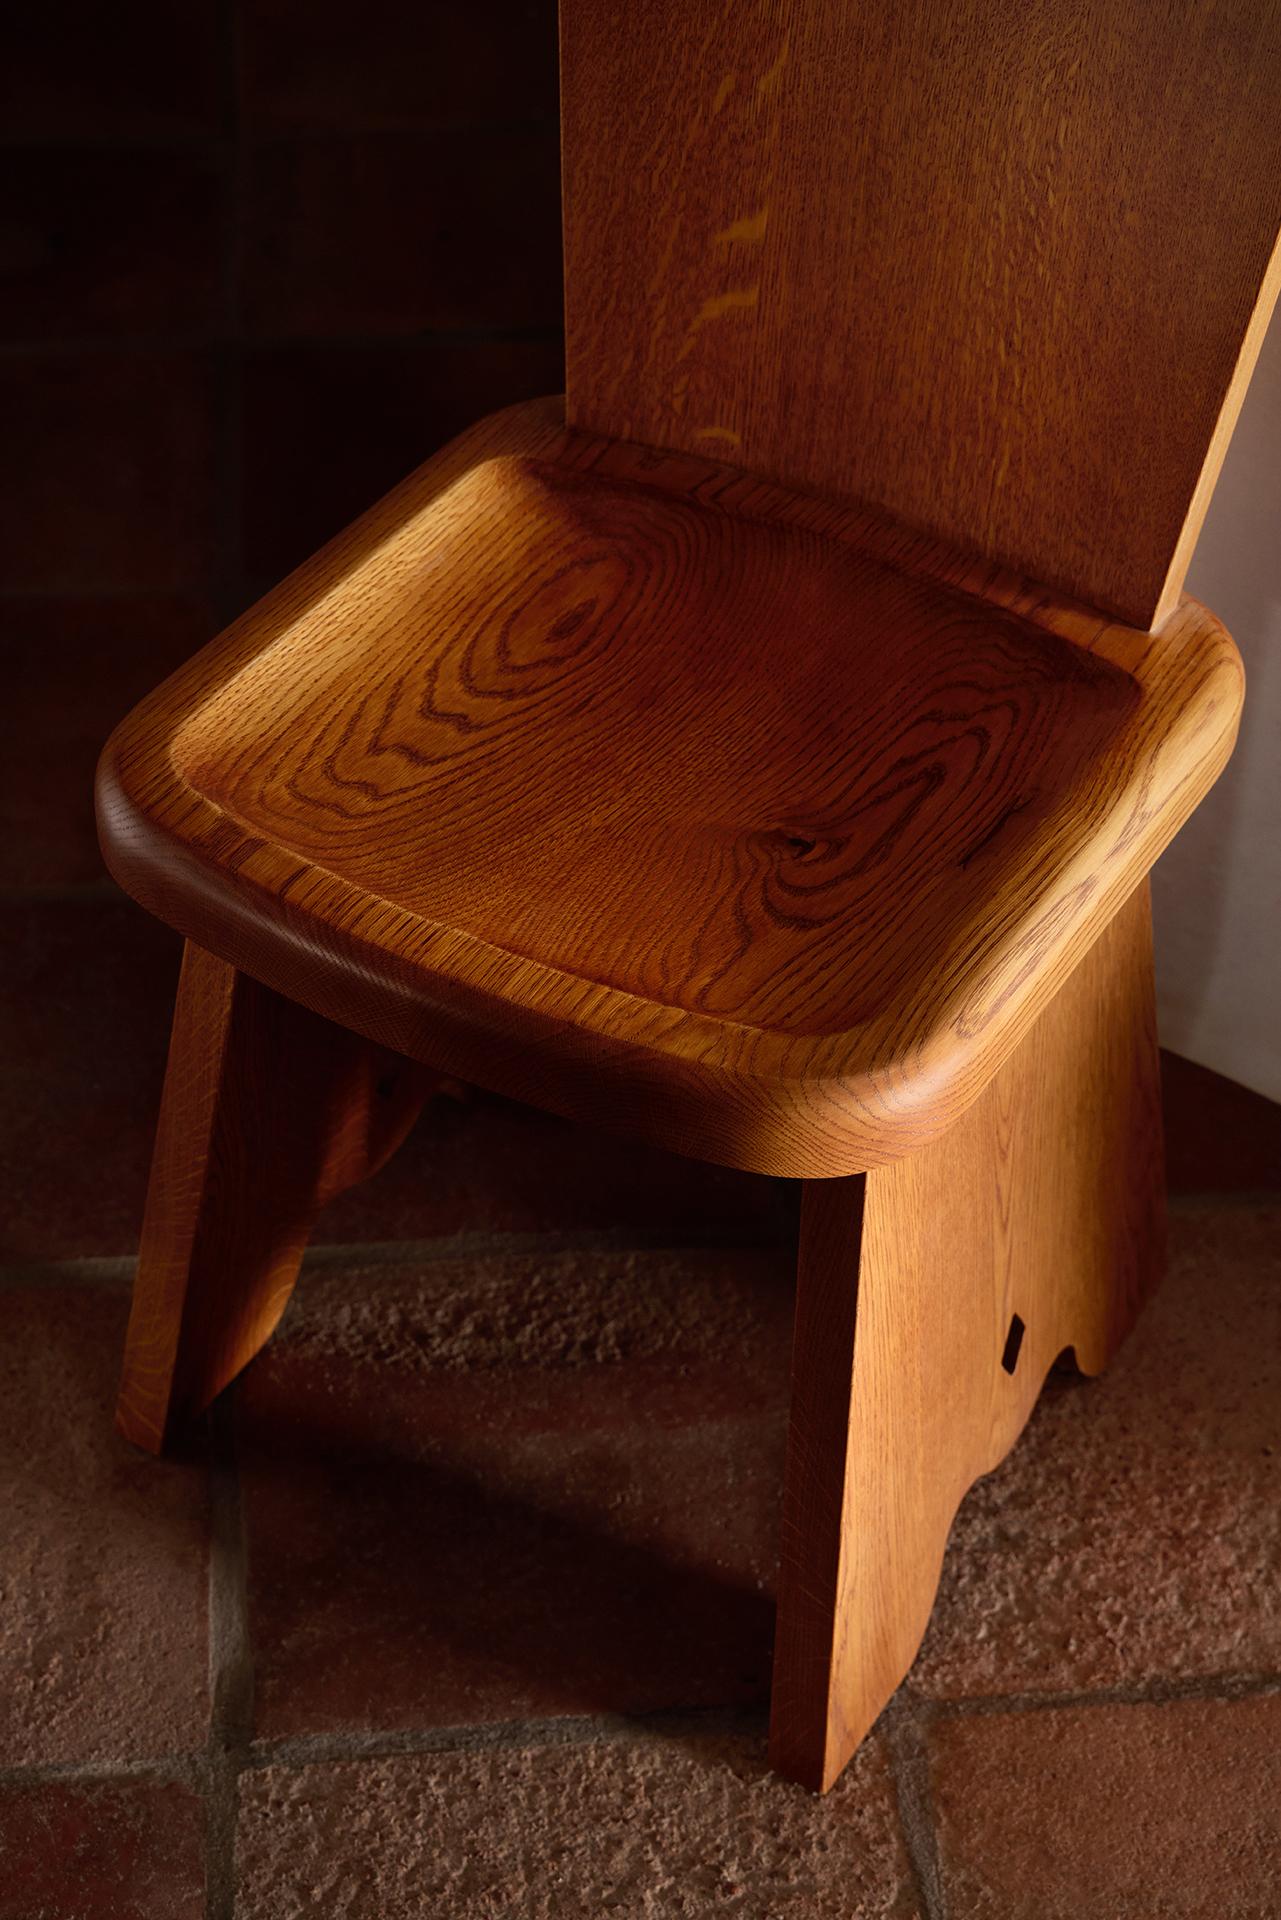 Rambling Chair in Honey French Oak Wood by Yaniv Chen for Lemon For Sale 2